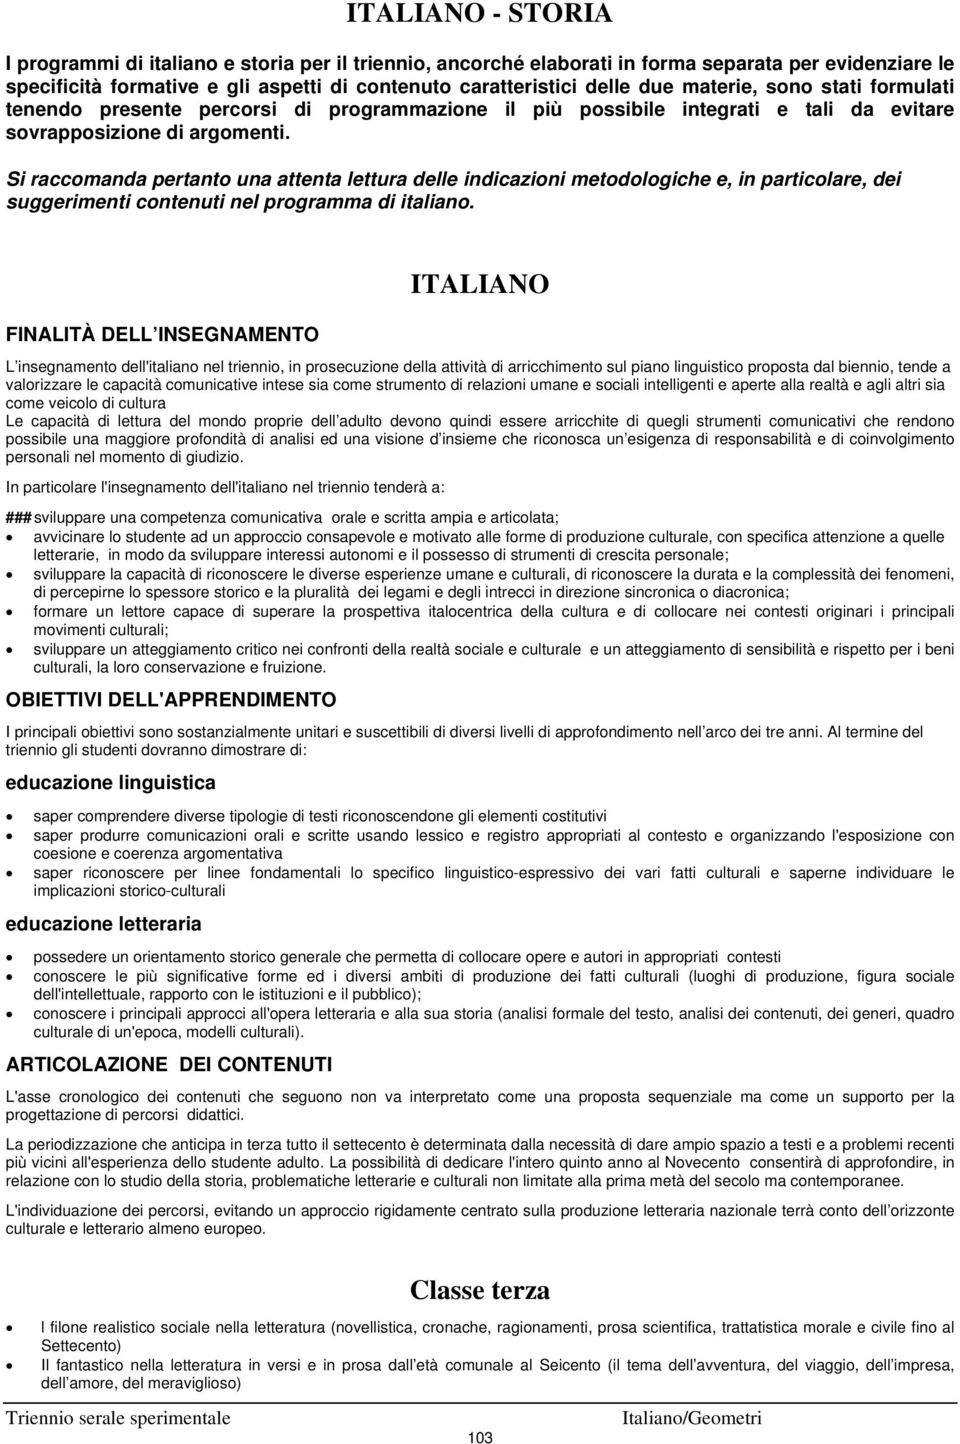 Si raccomanda pertanto una attenta lettura delle indicazioni metodologiche e, in particolare, dei suggerimenti contenuti nel programma di italiano.